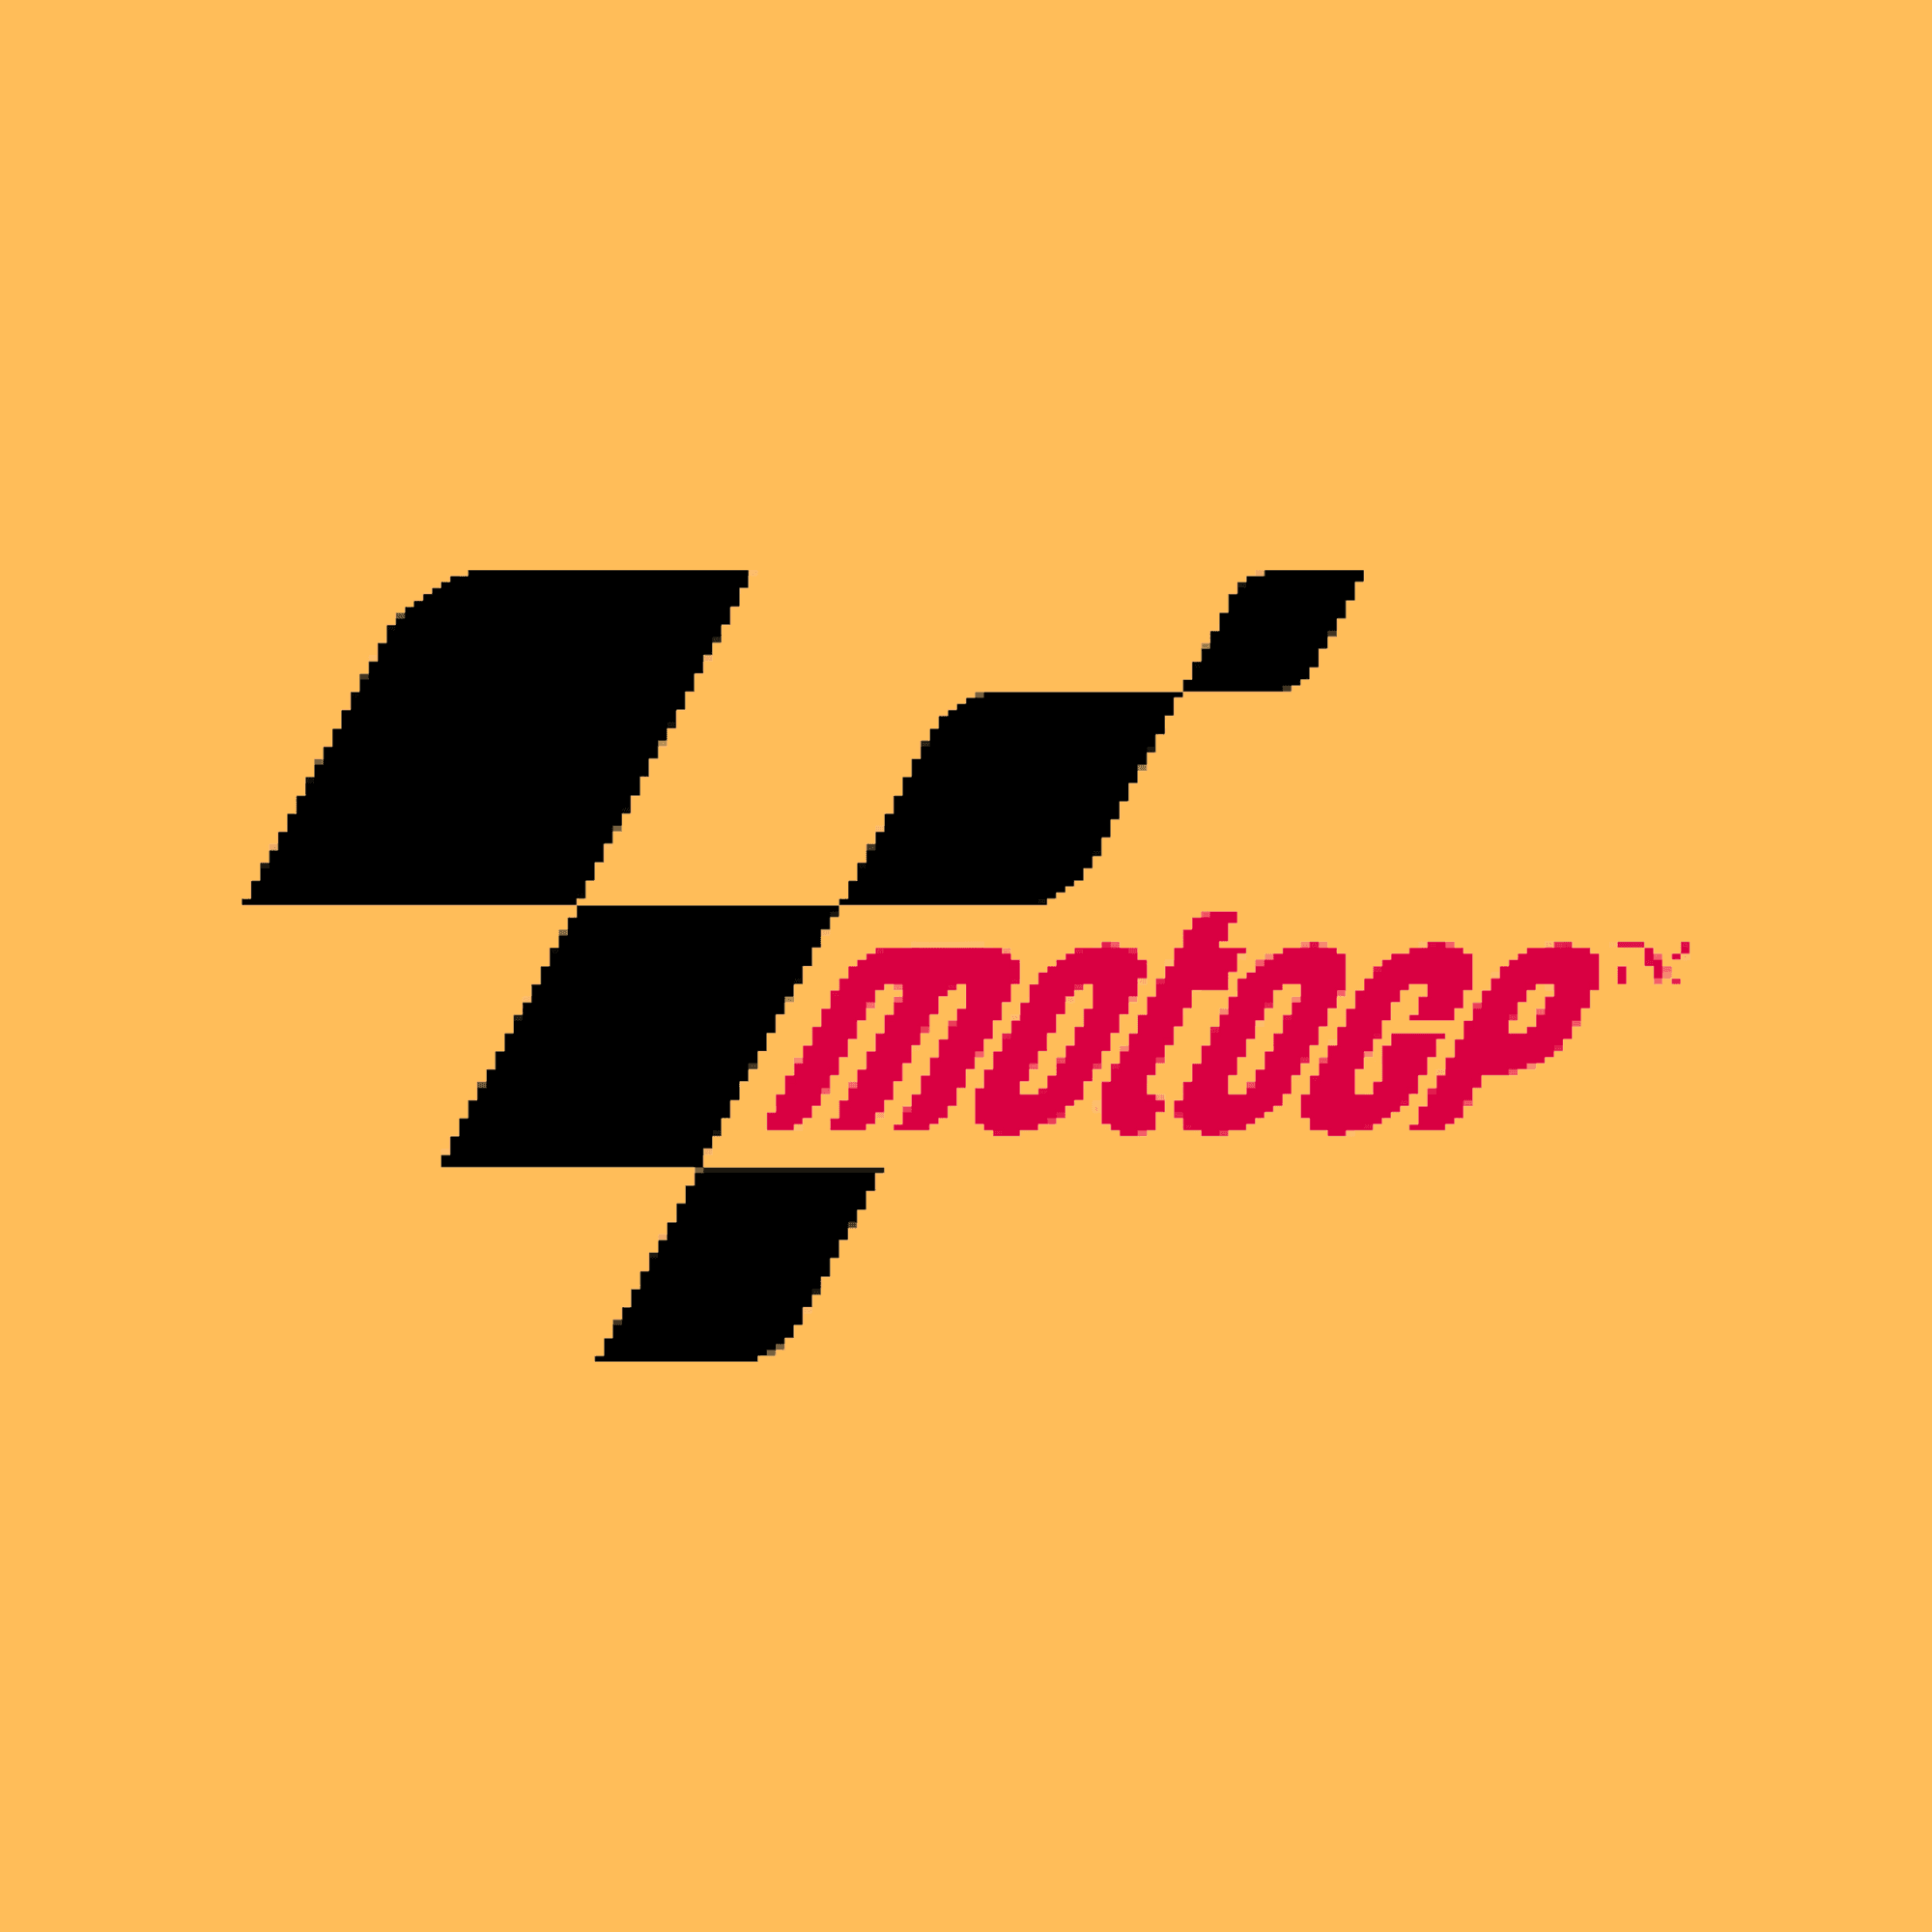 Motogp Logo #3 - Motorsport NFT SHOP